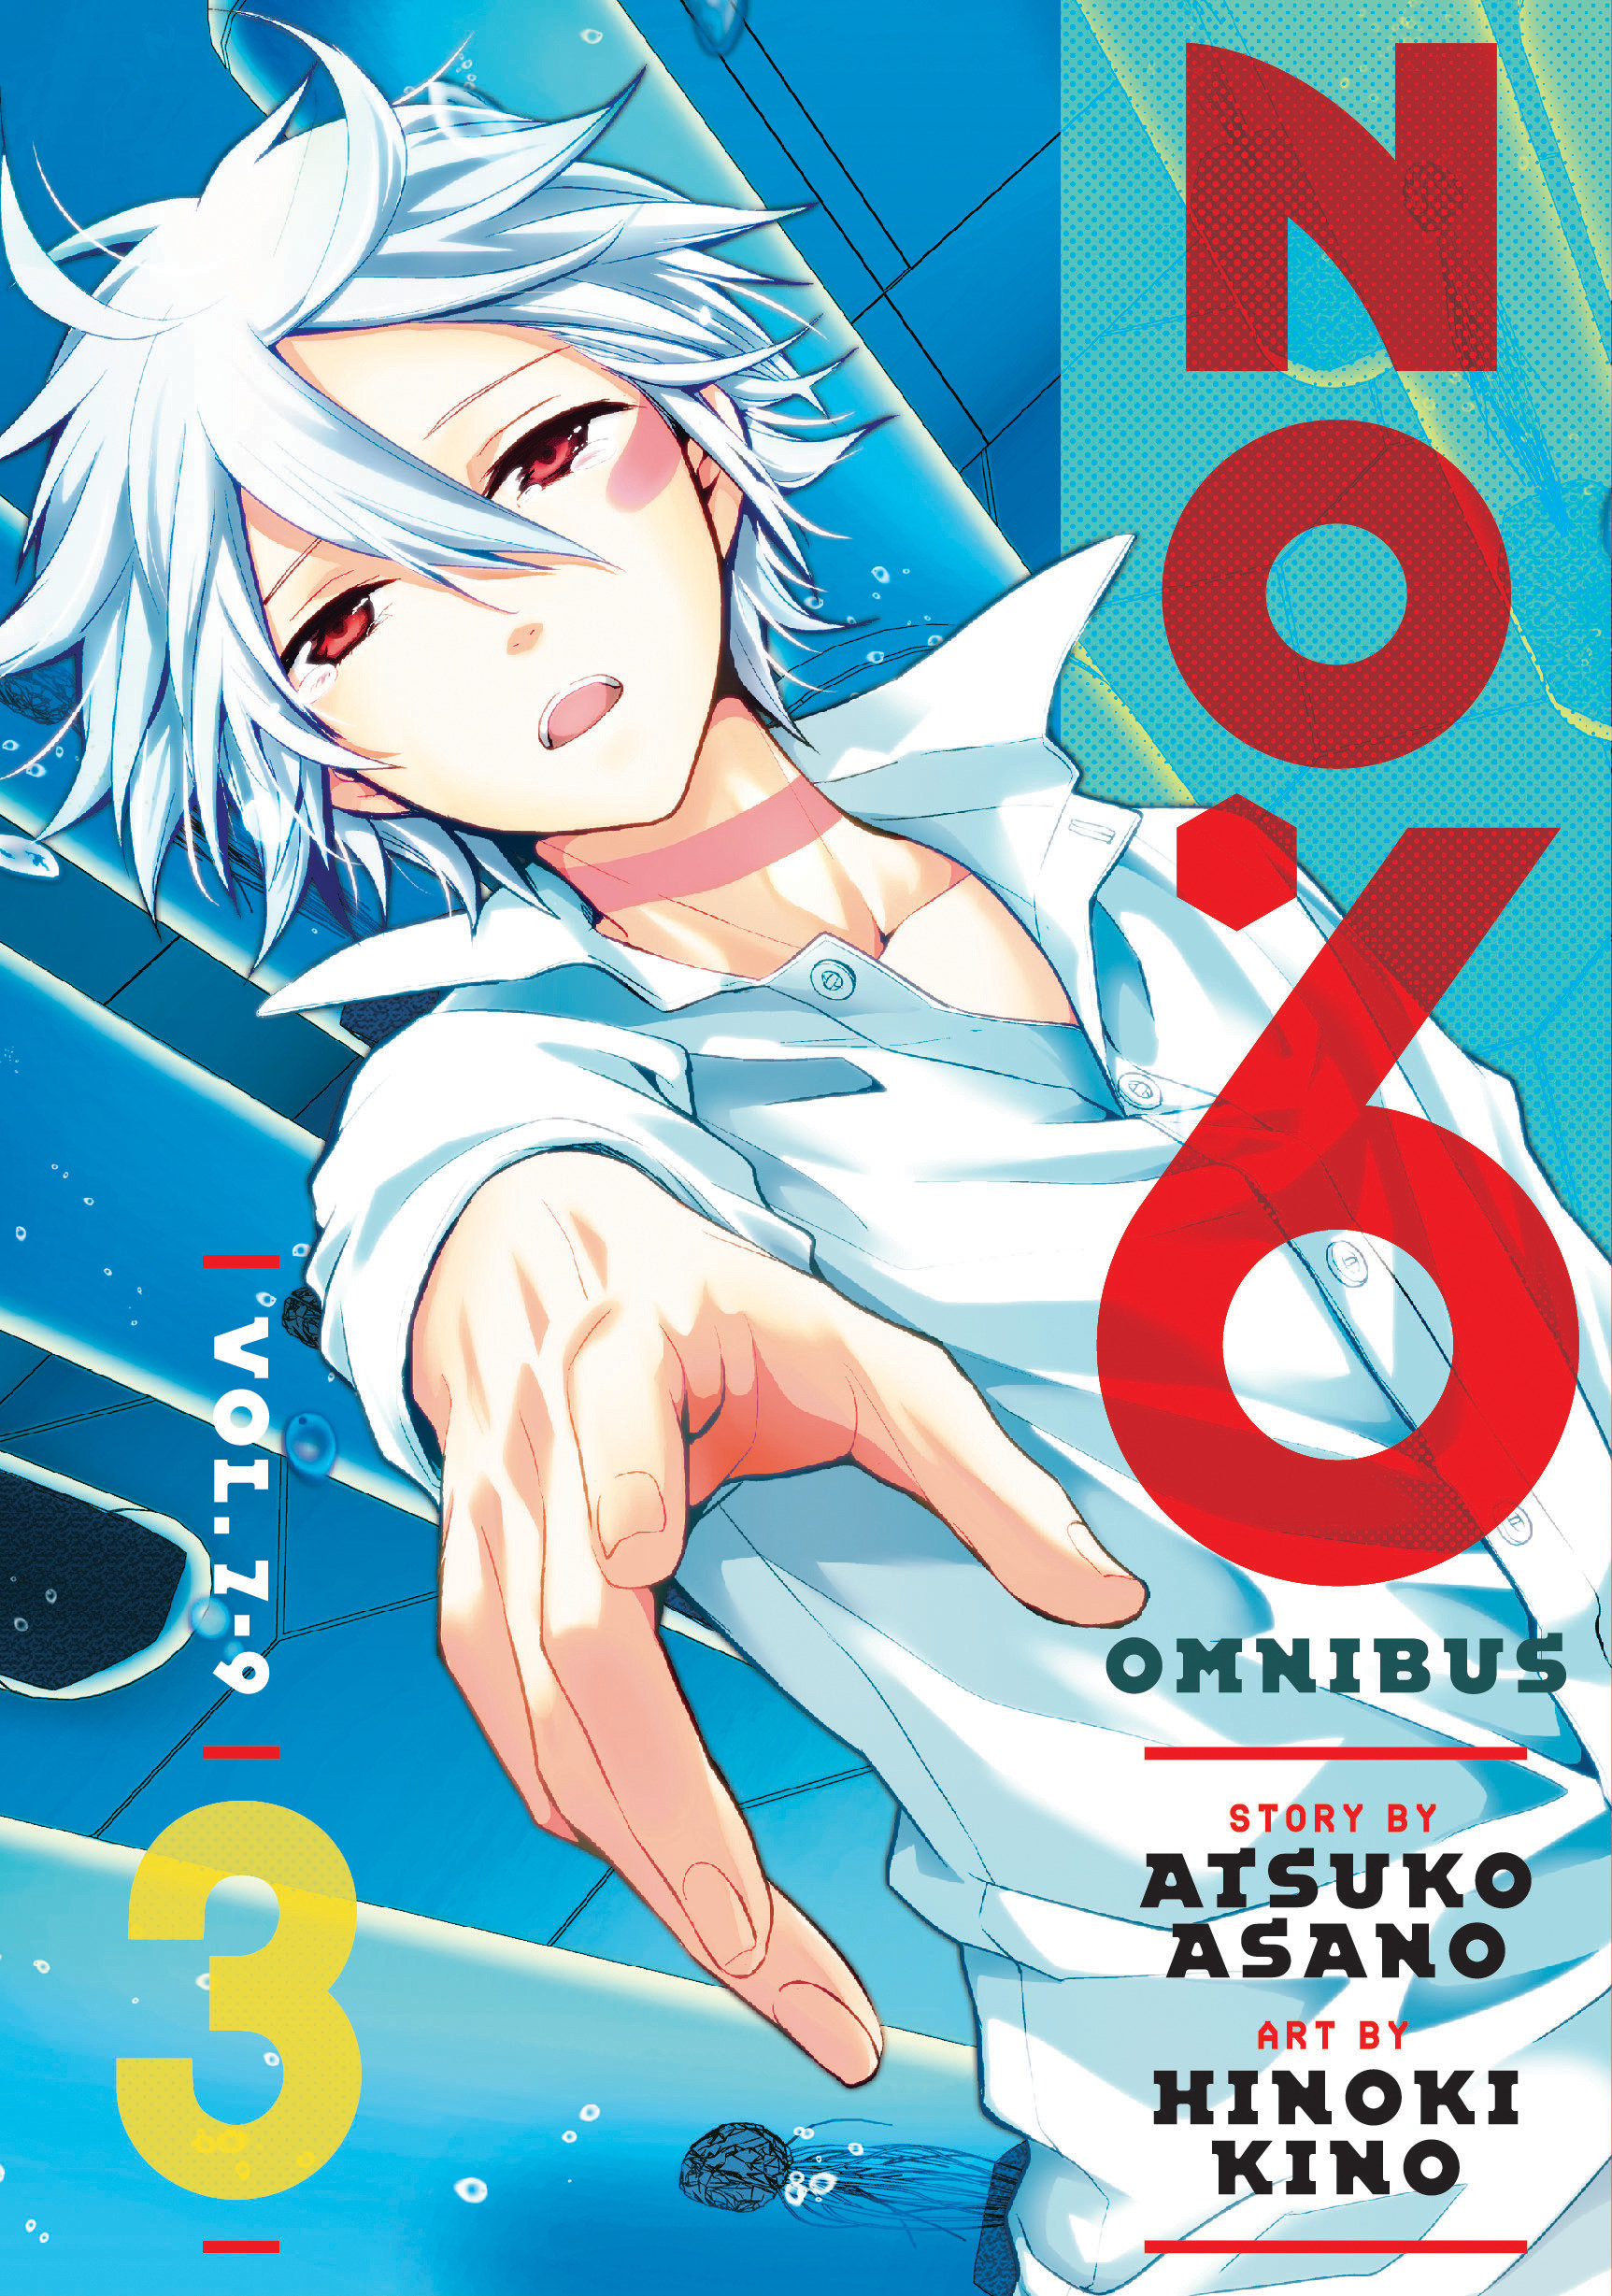 No 6 Omnibus Manga Volume 3 (Vol 7-9)